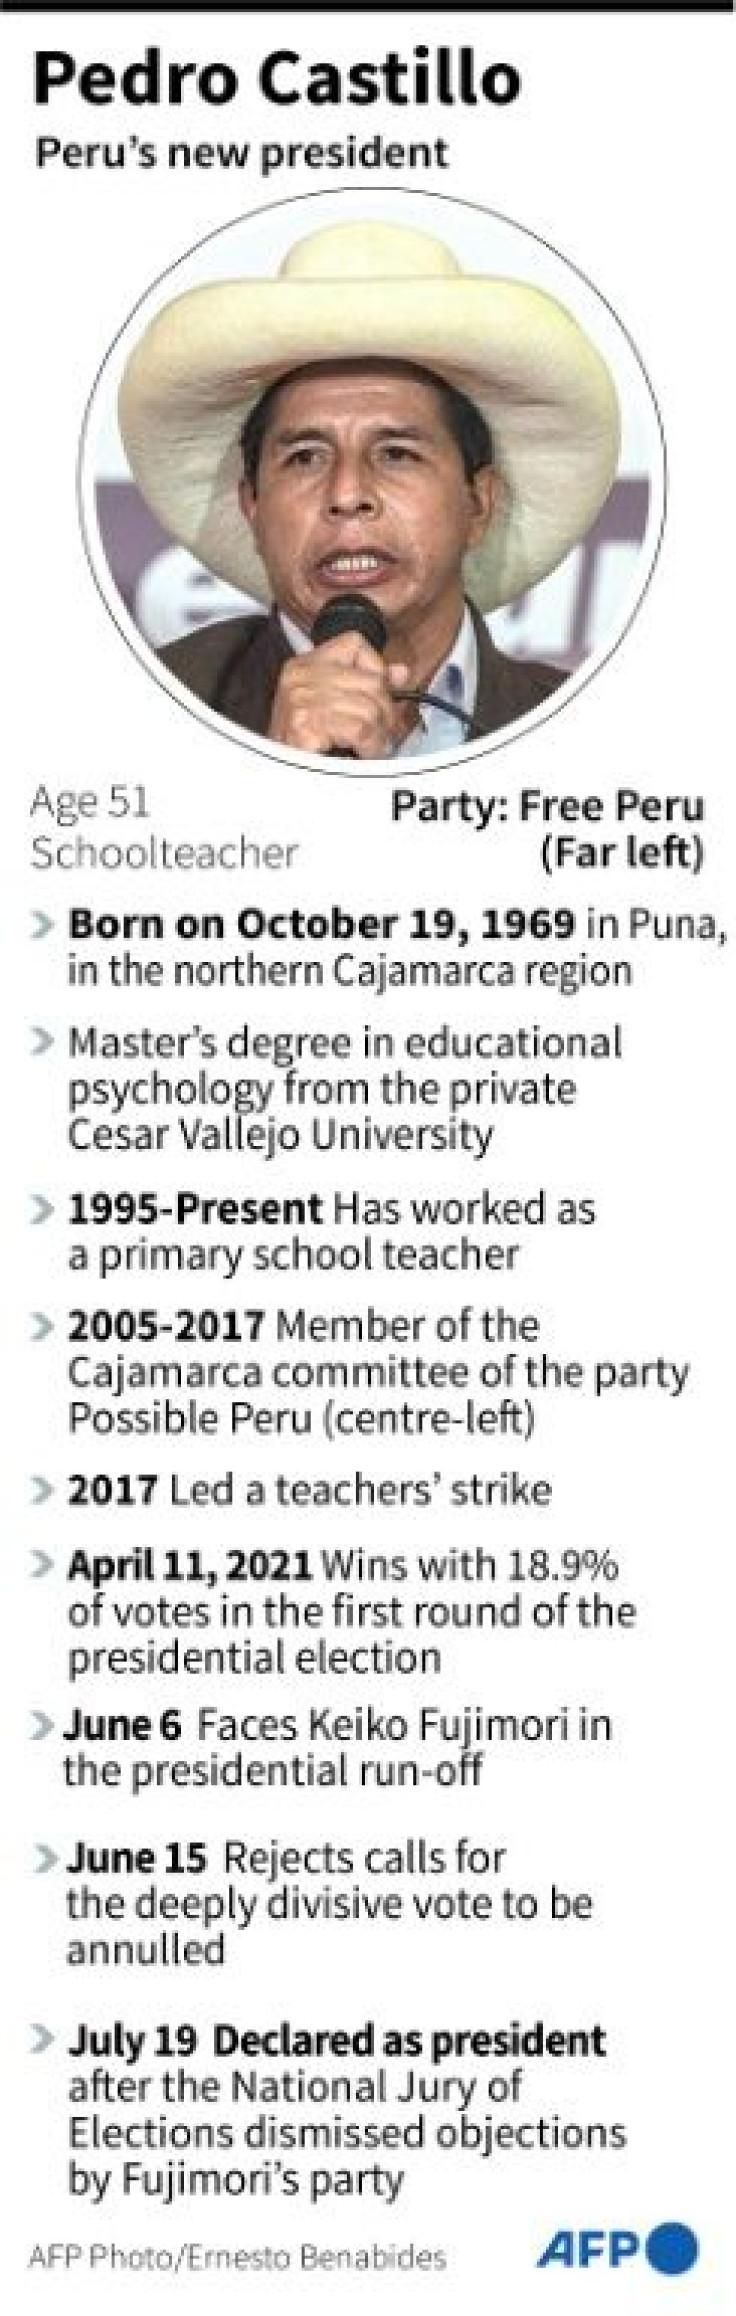 Profile of Pedro Castillo, Peru's new president.